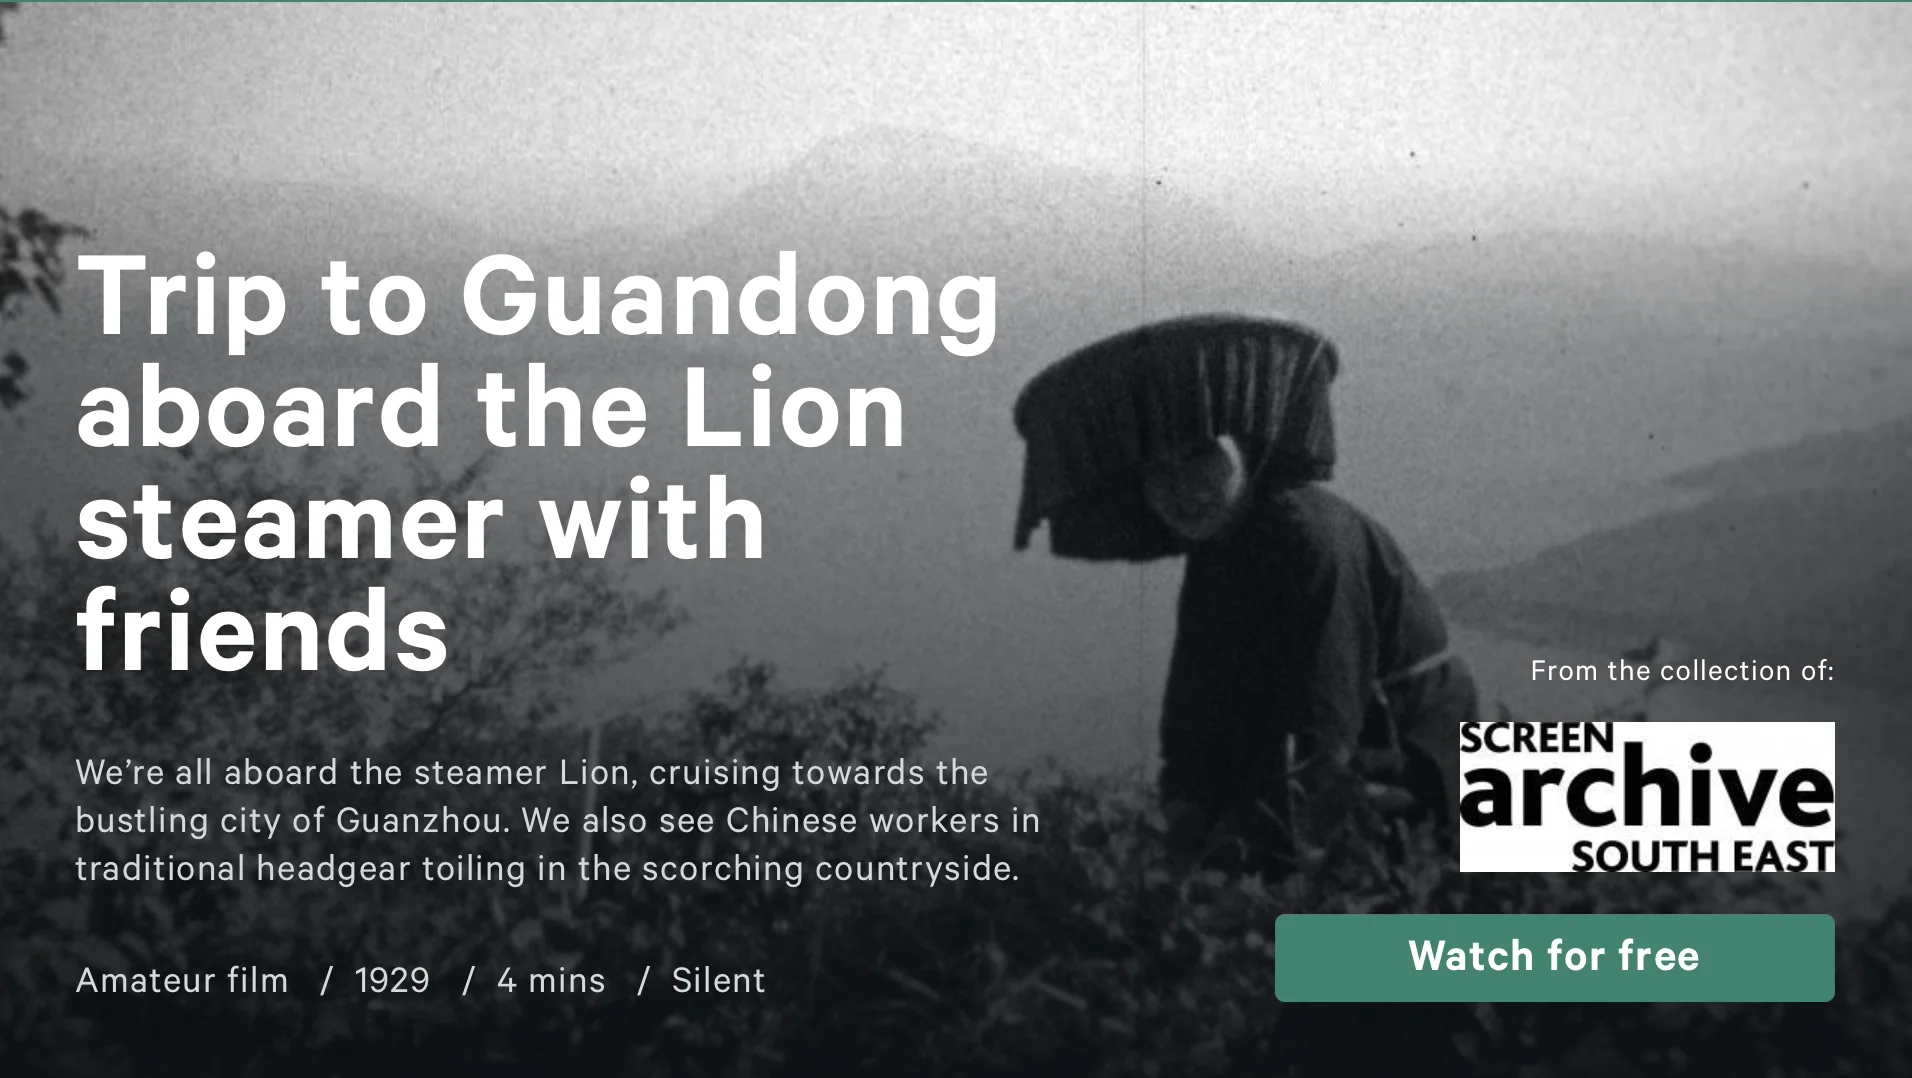 電影《Trip to Guandong aboard the Lion steamer with friends》，製作人為William Simpson，片長四分鐘。